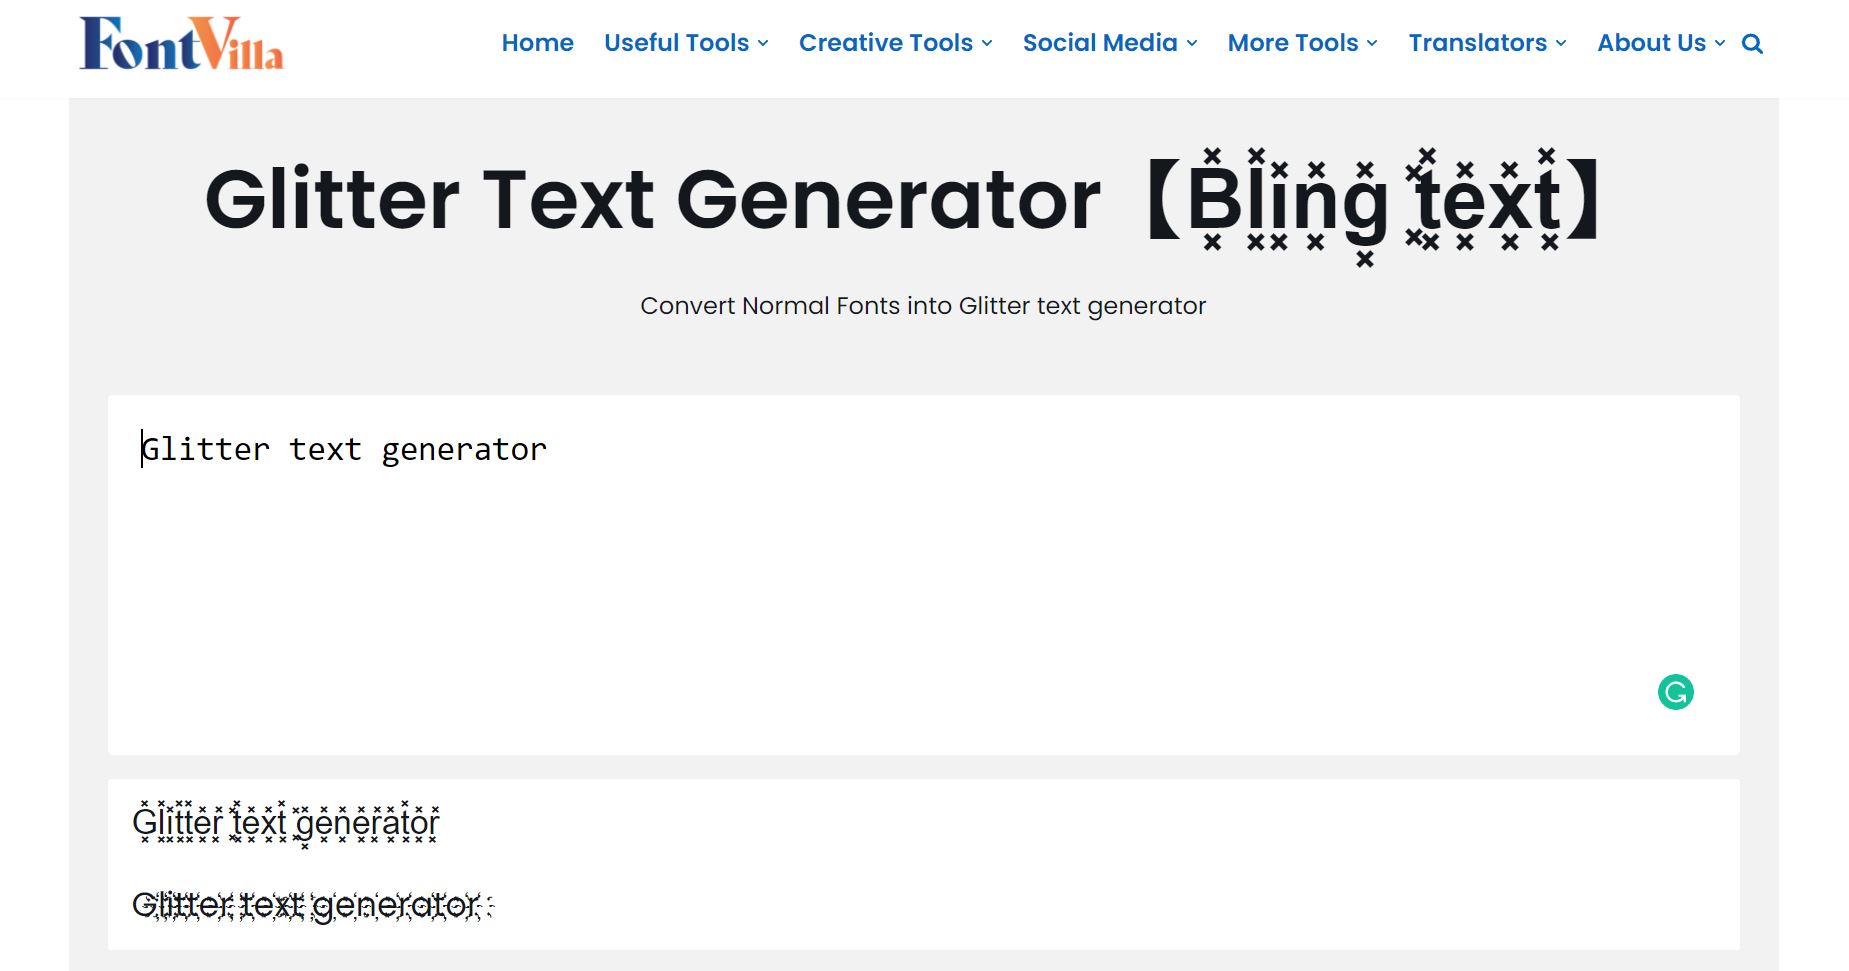 Glitter Generator 【B͓̽l͓̽i͓̽n͓̽g͓̽ ͓̽t͓̽e͓̽x͓̽t͓̽】 FontVilla.com